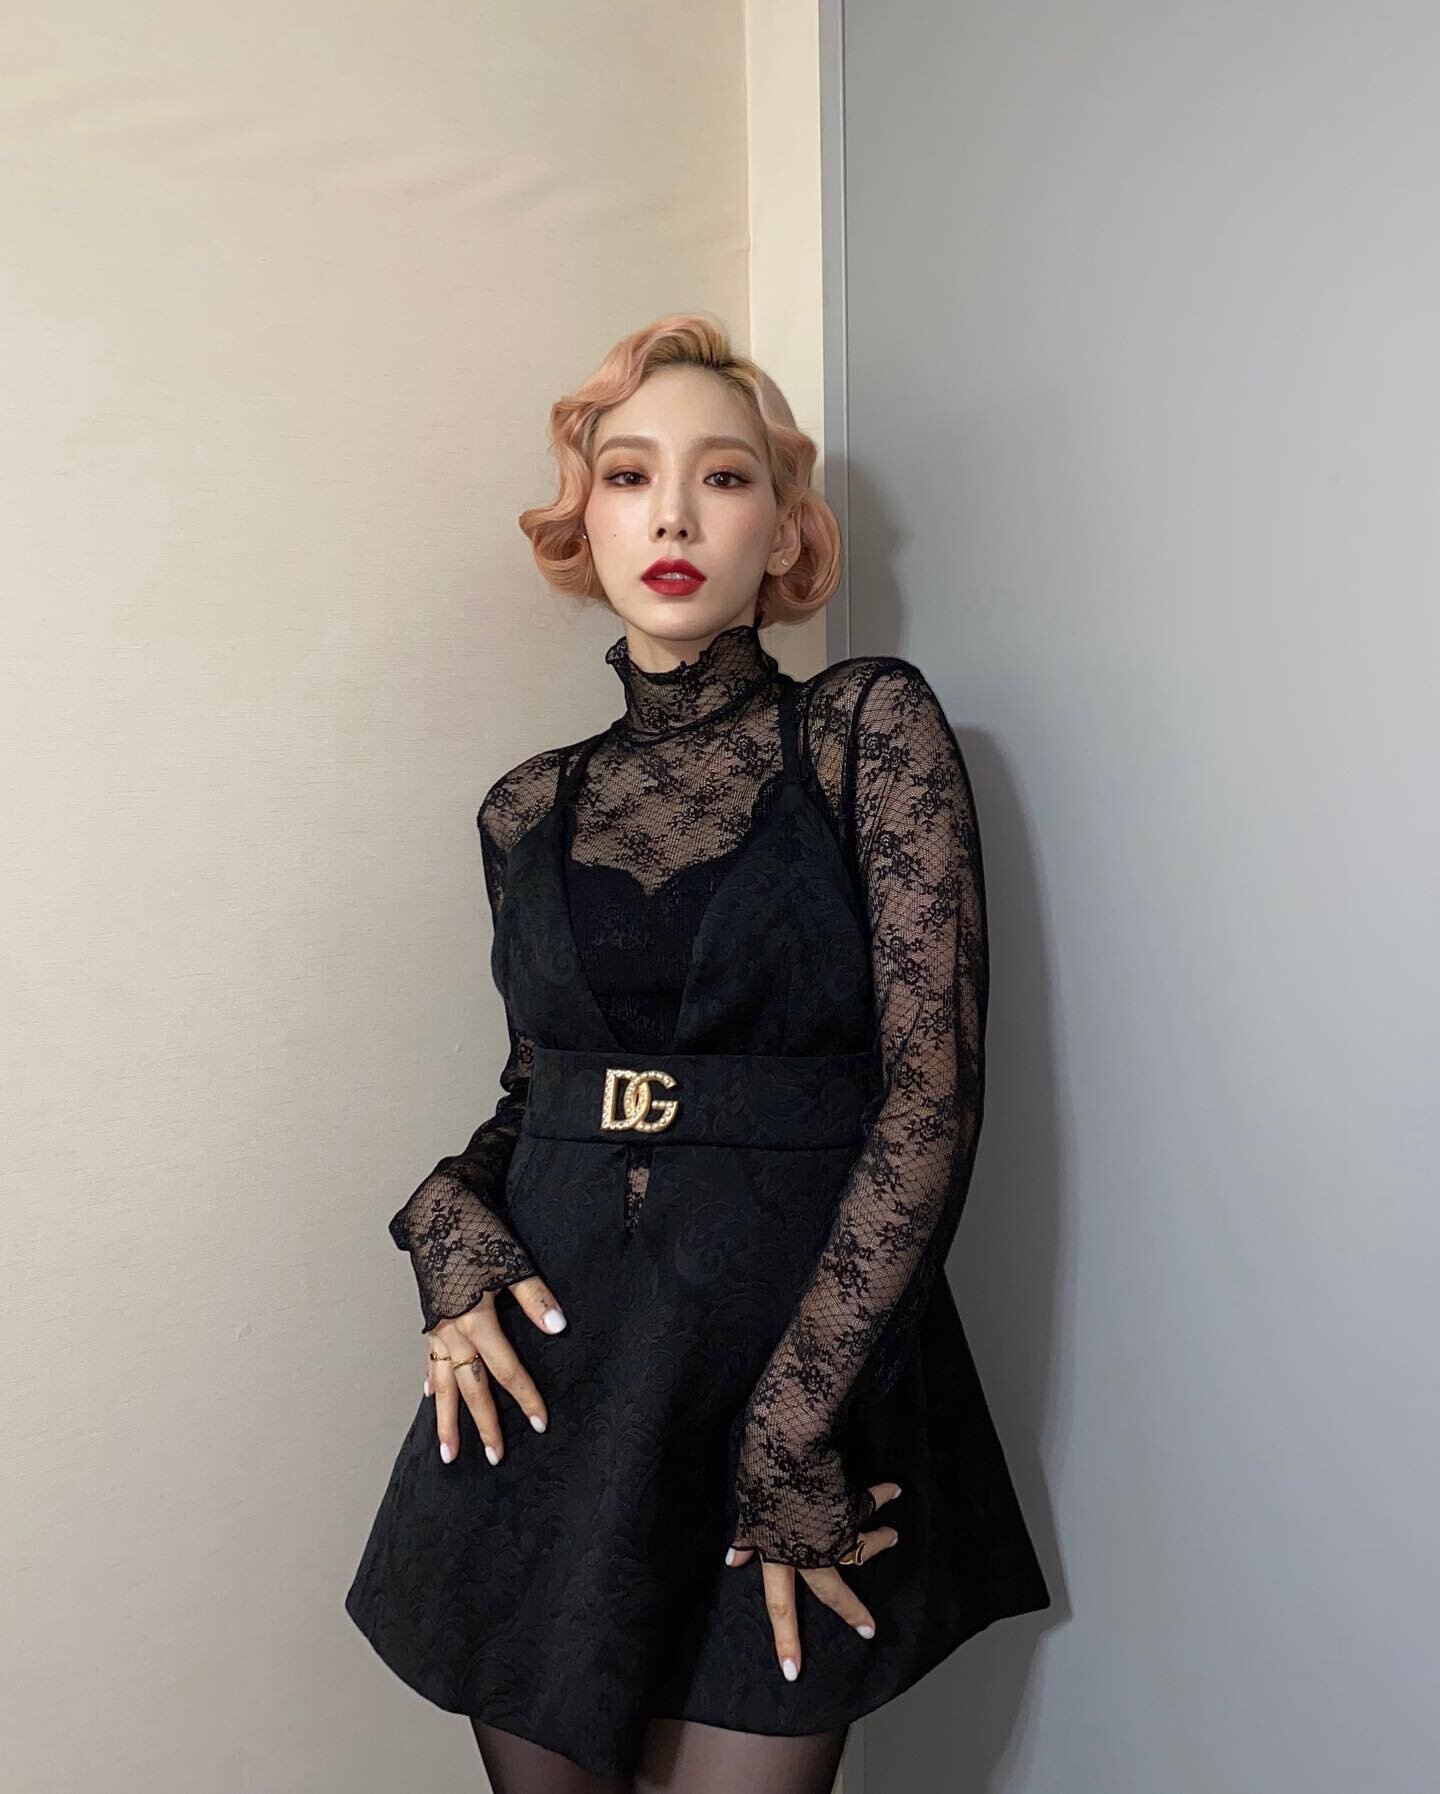 Taeyeon Instagram December 9, 2020 – Star Style